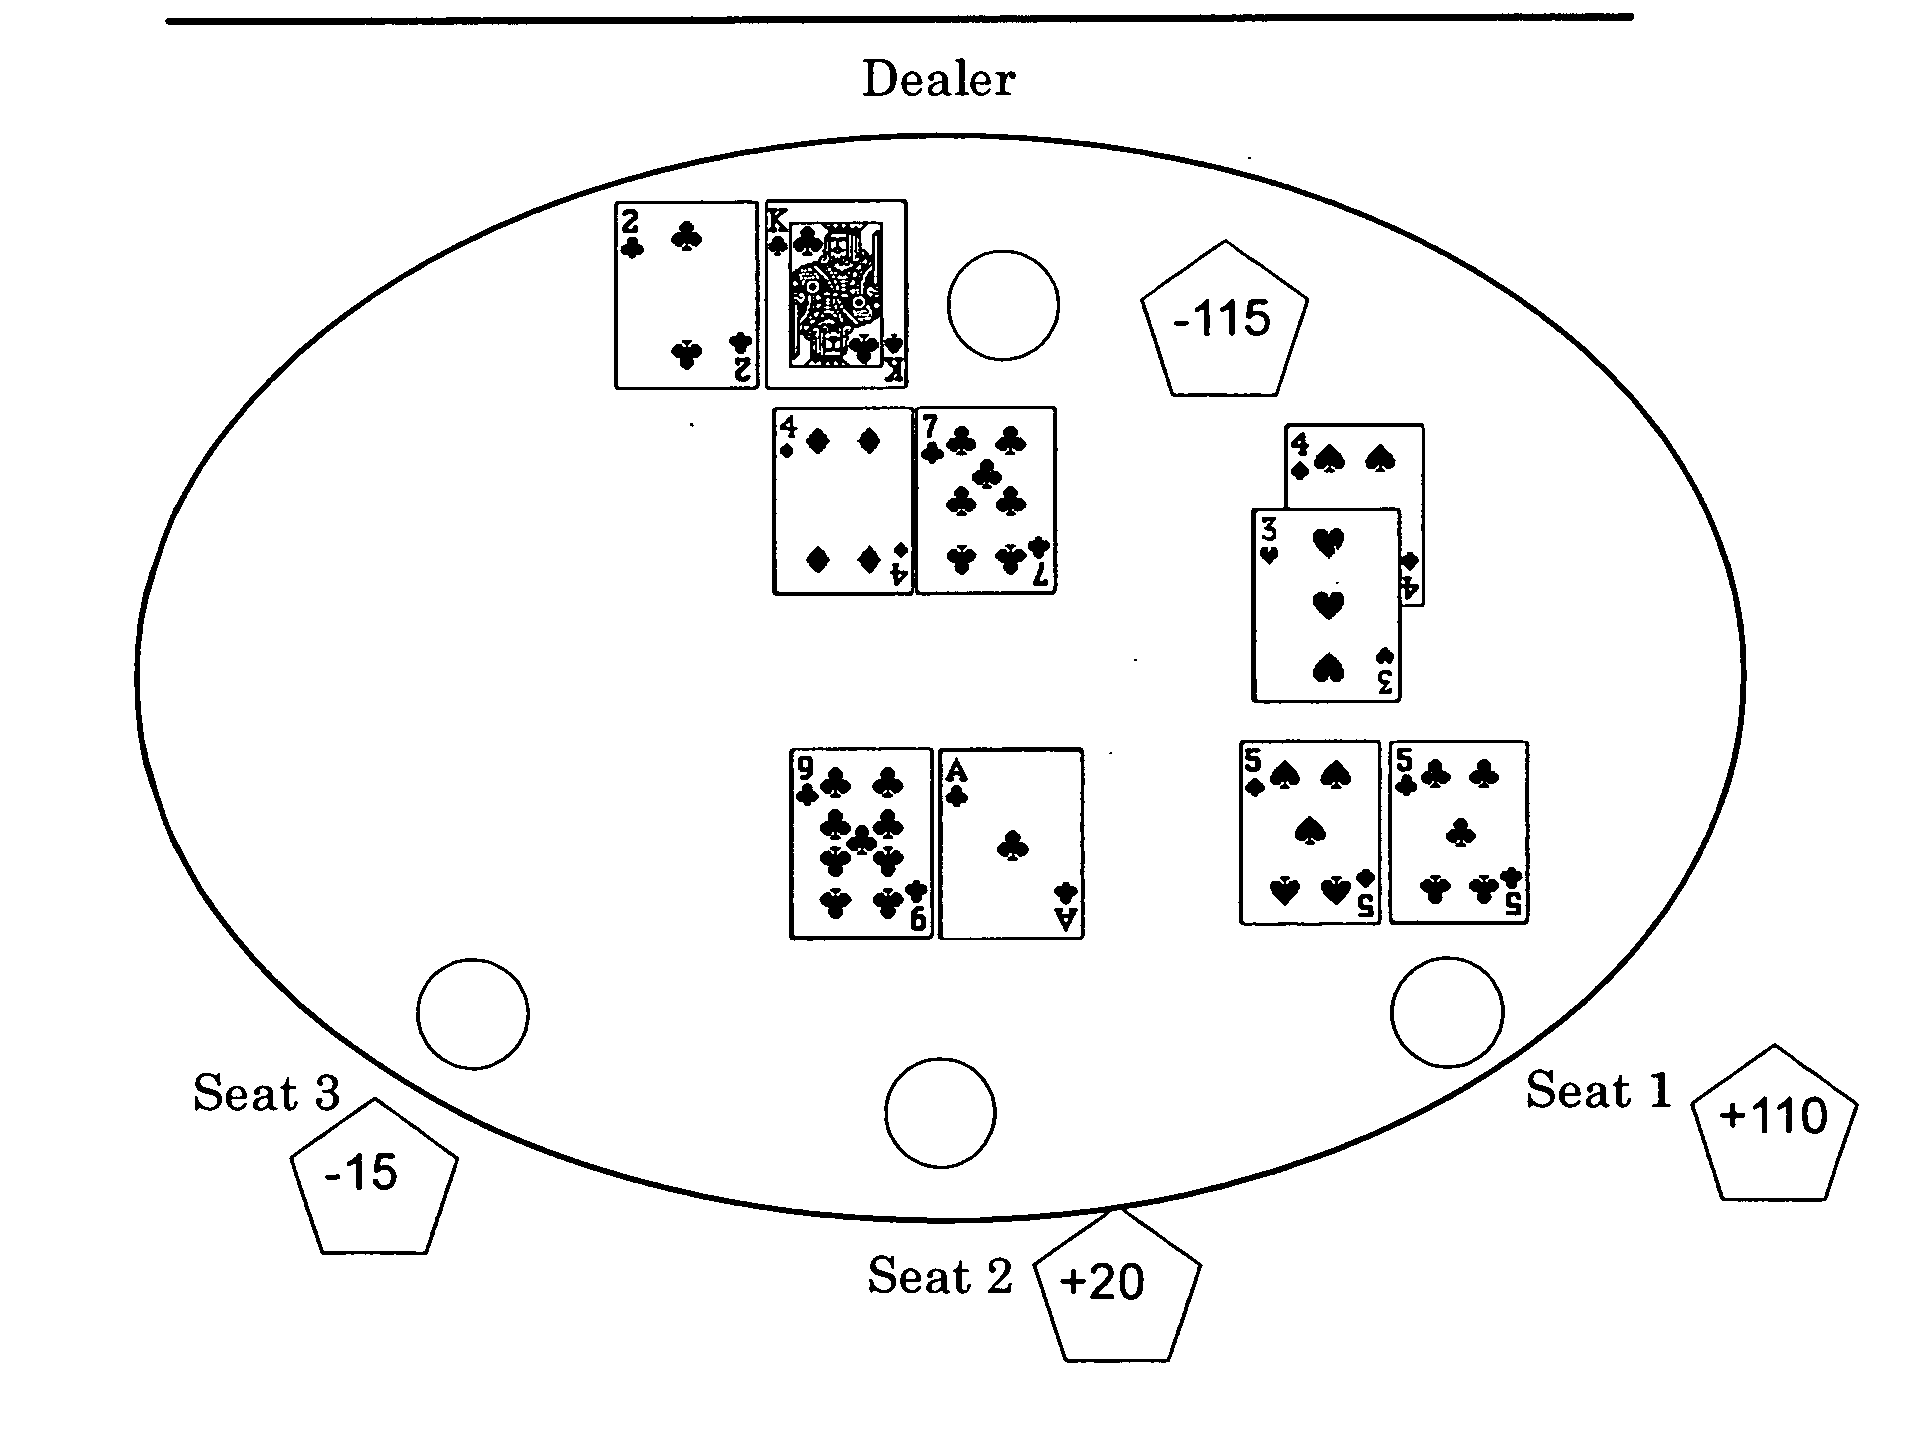 Active dealer version of blackjack